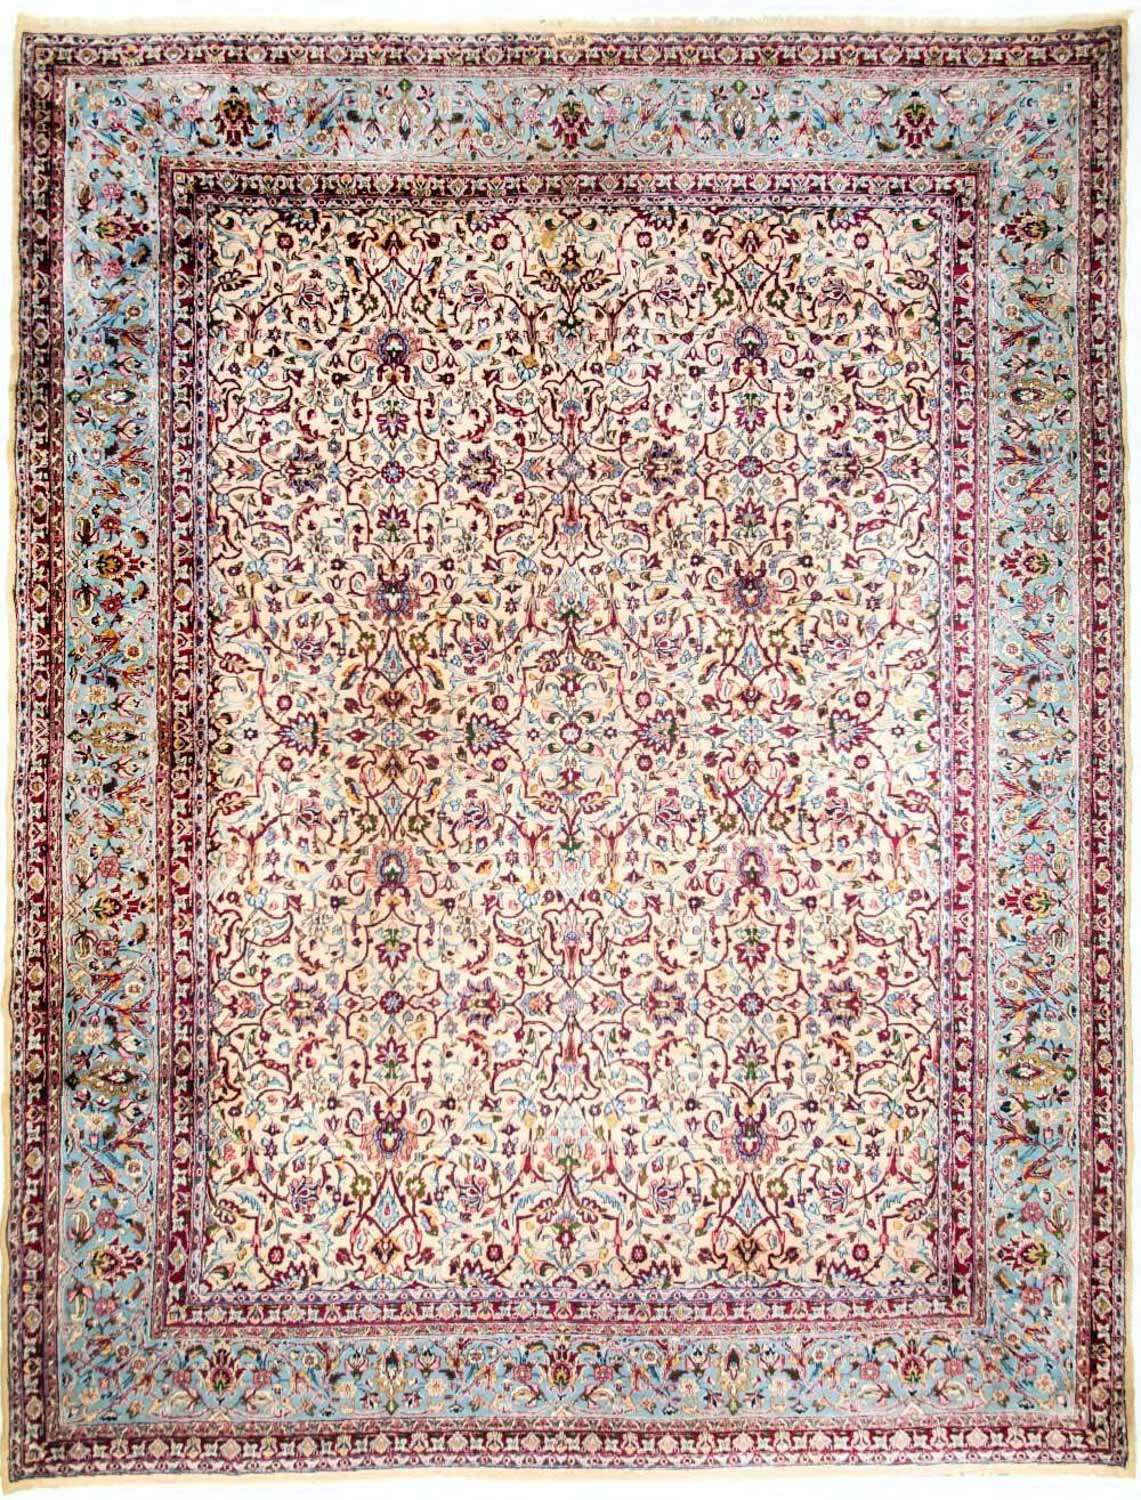 Tapis persan - Classique - 420 x 316 cm - beige